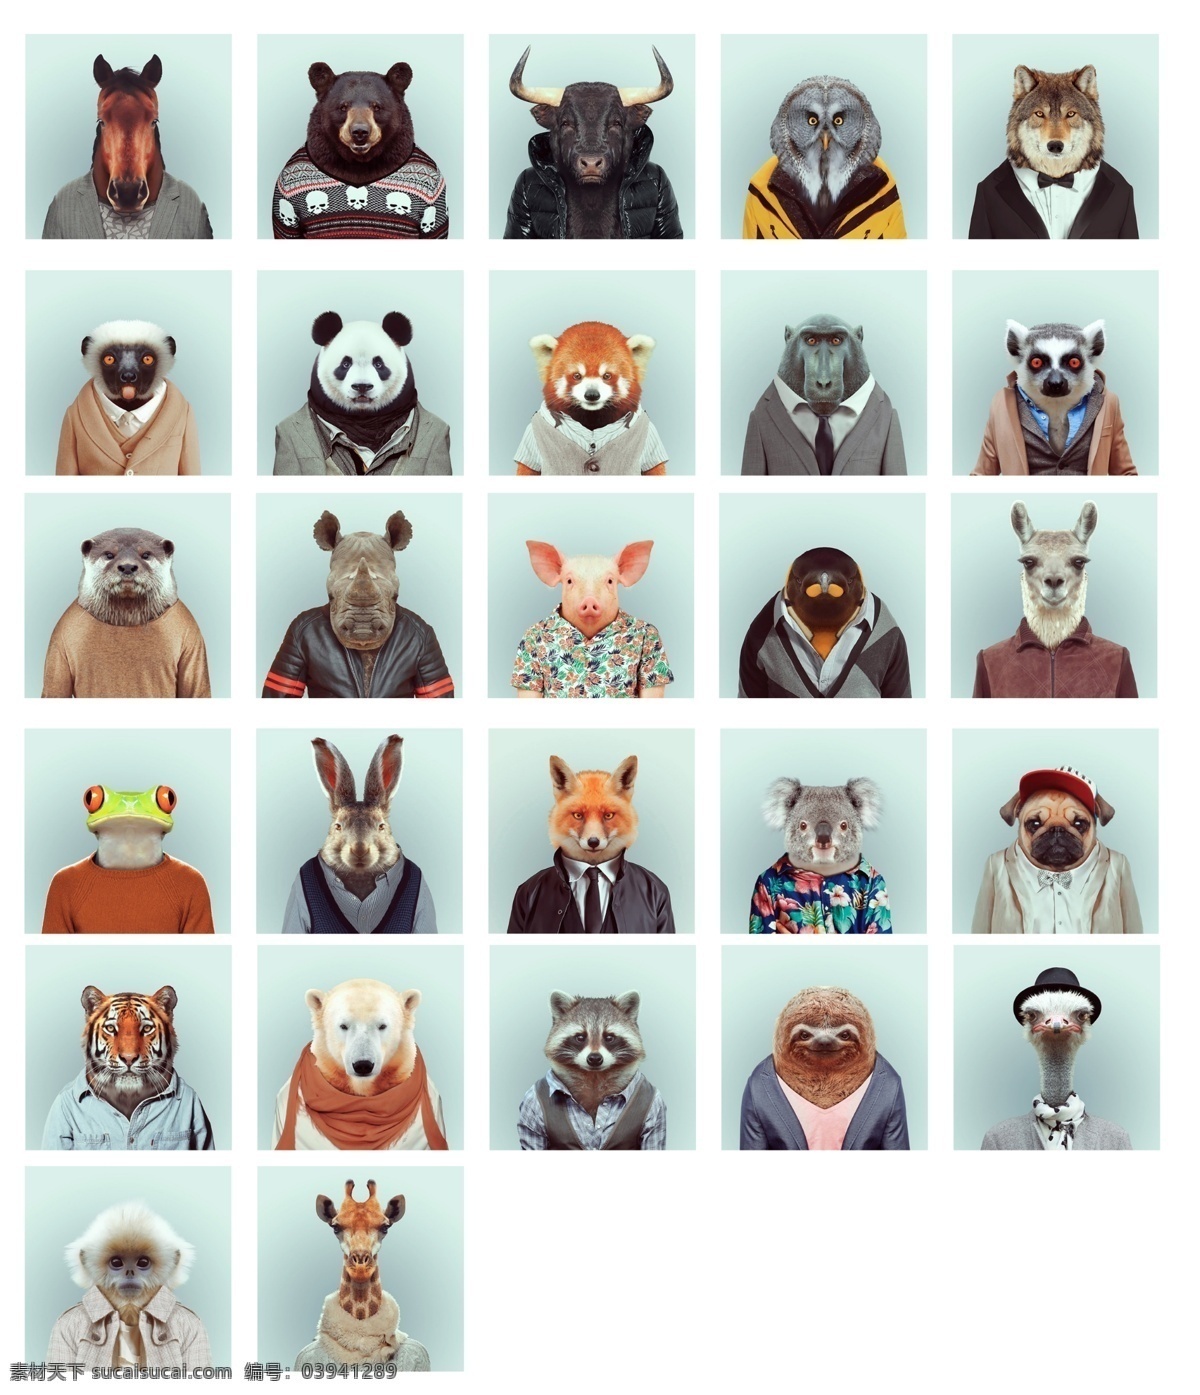 十二生肖 动物证件照 西装服 时尚动物 动物系列 动漫动画 动漫人物